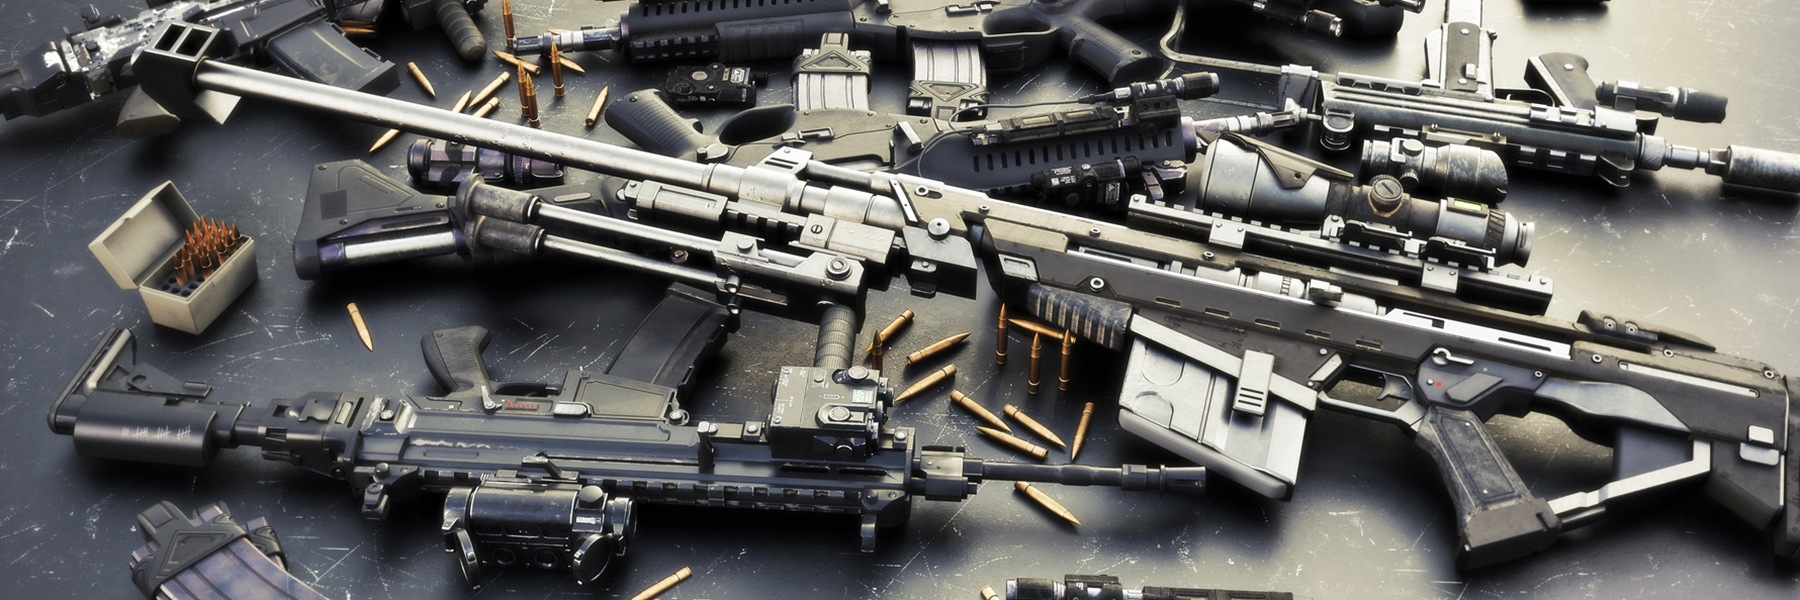 Assault rifles and ammunition